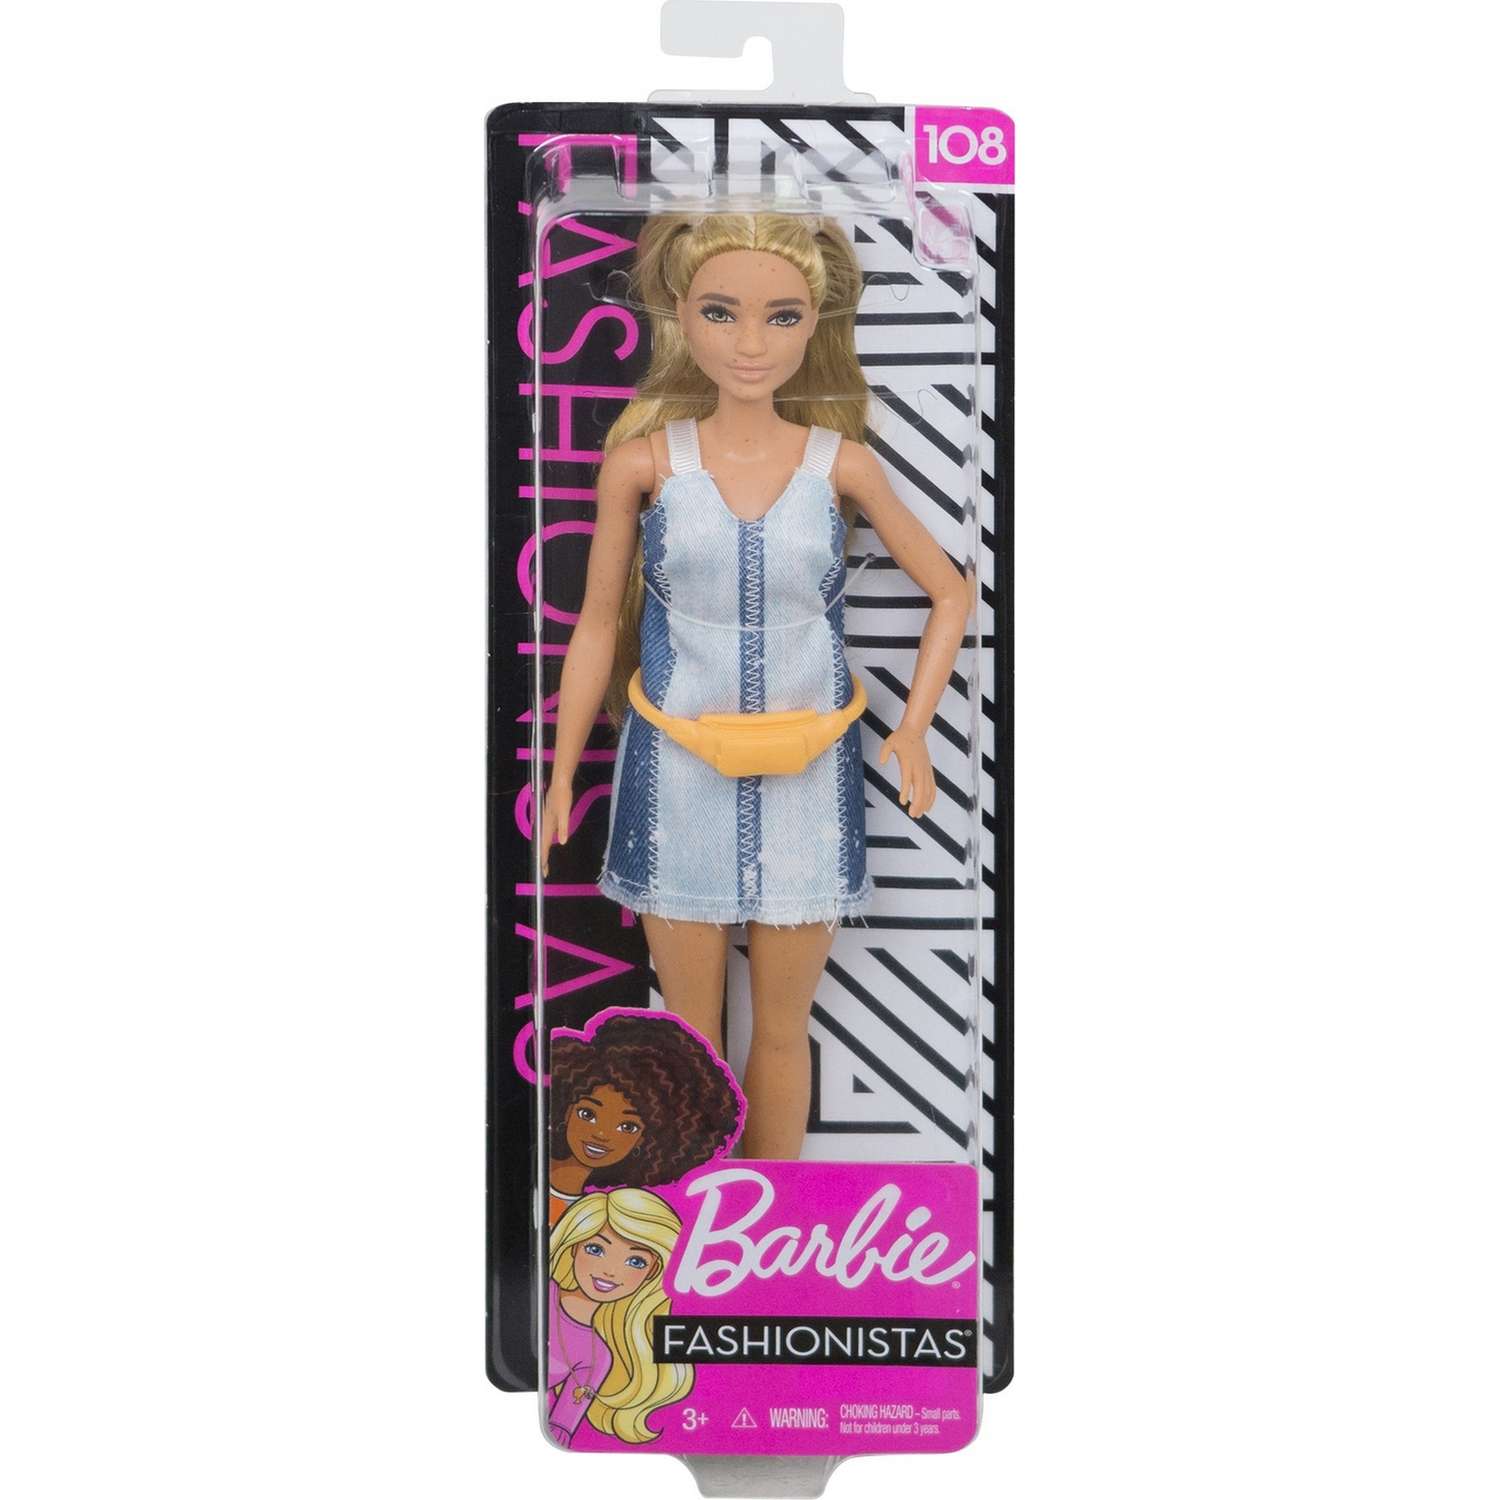 Кукла Barbie Игра с модой 108 FXL48 FBR37 - фото 2